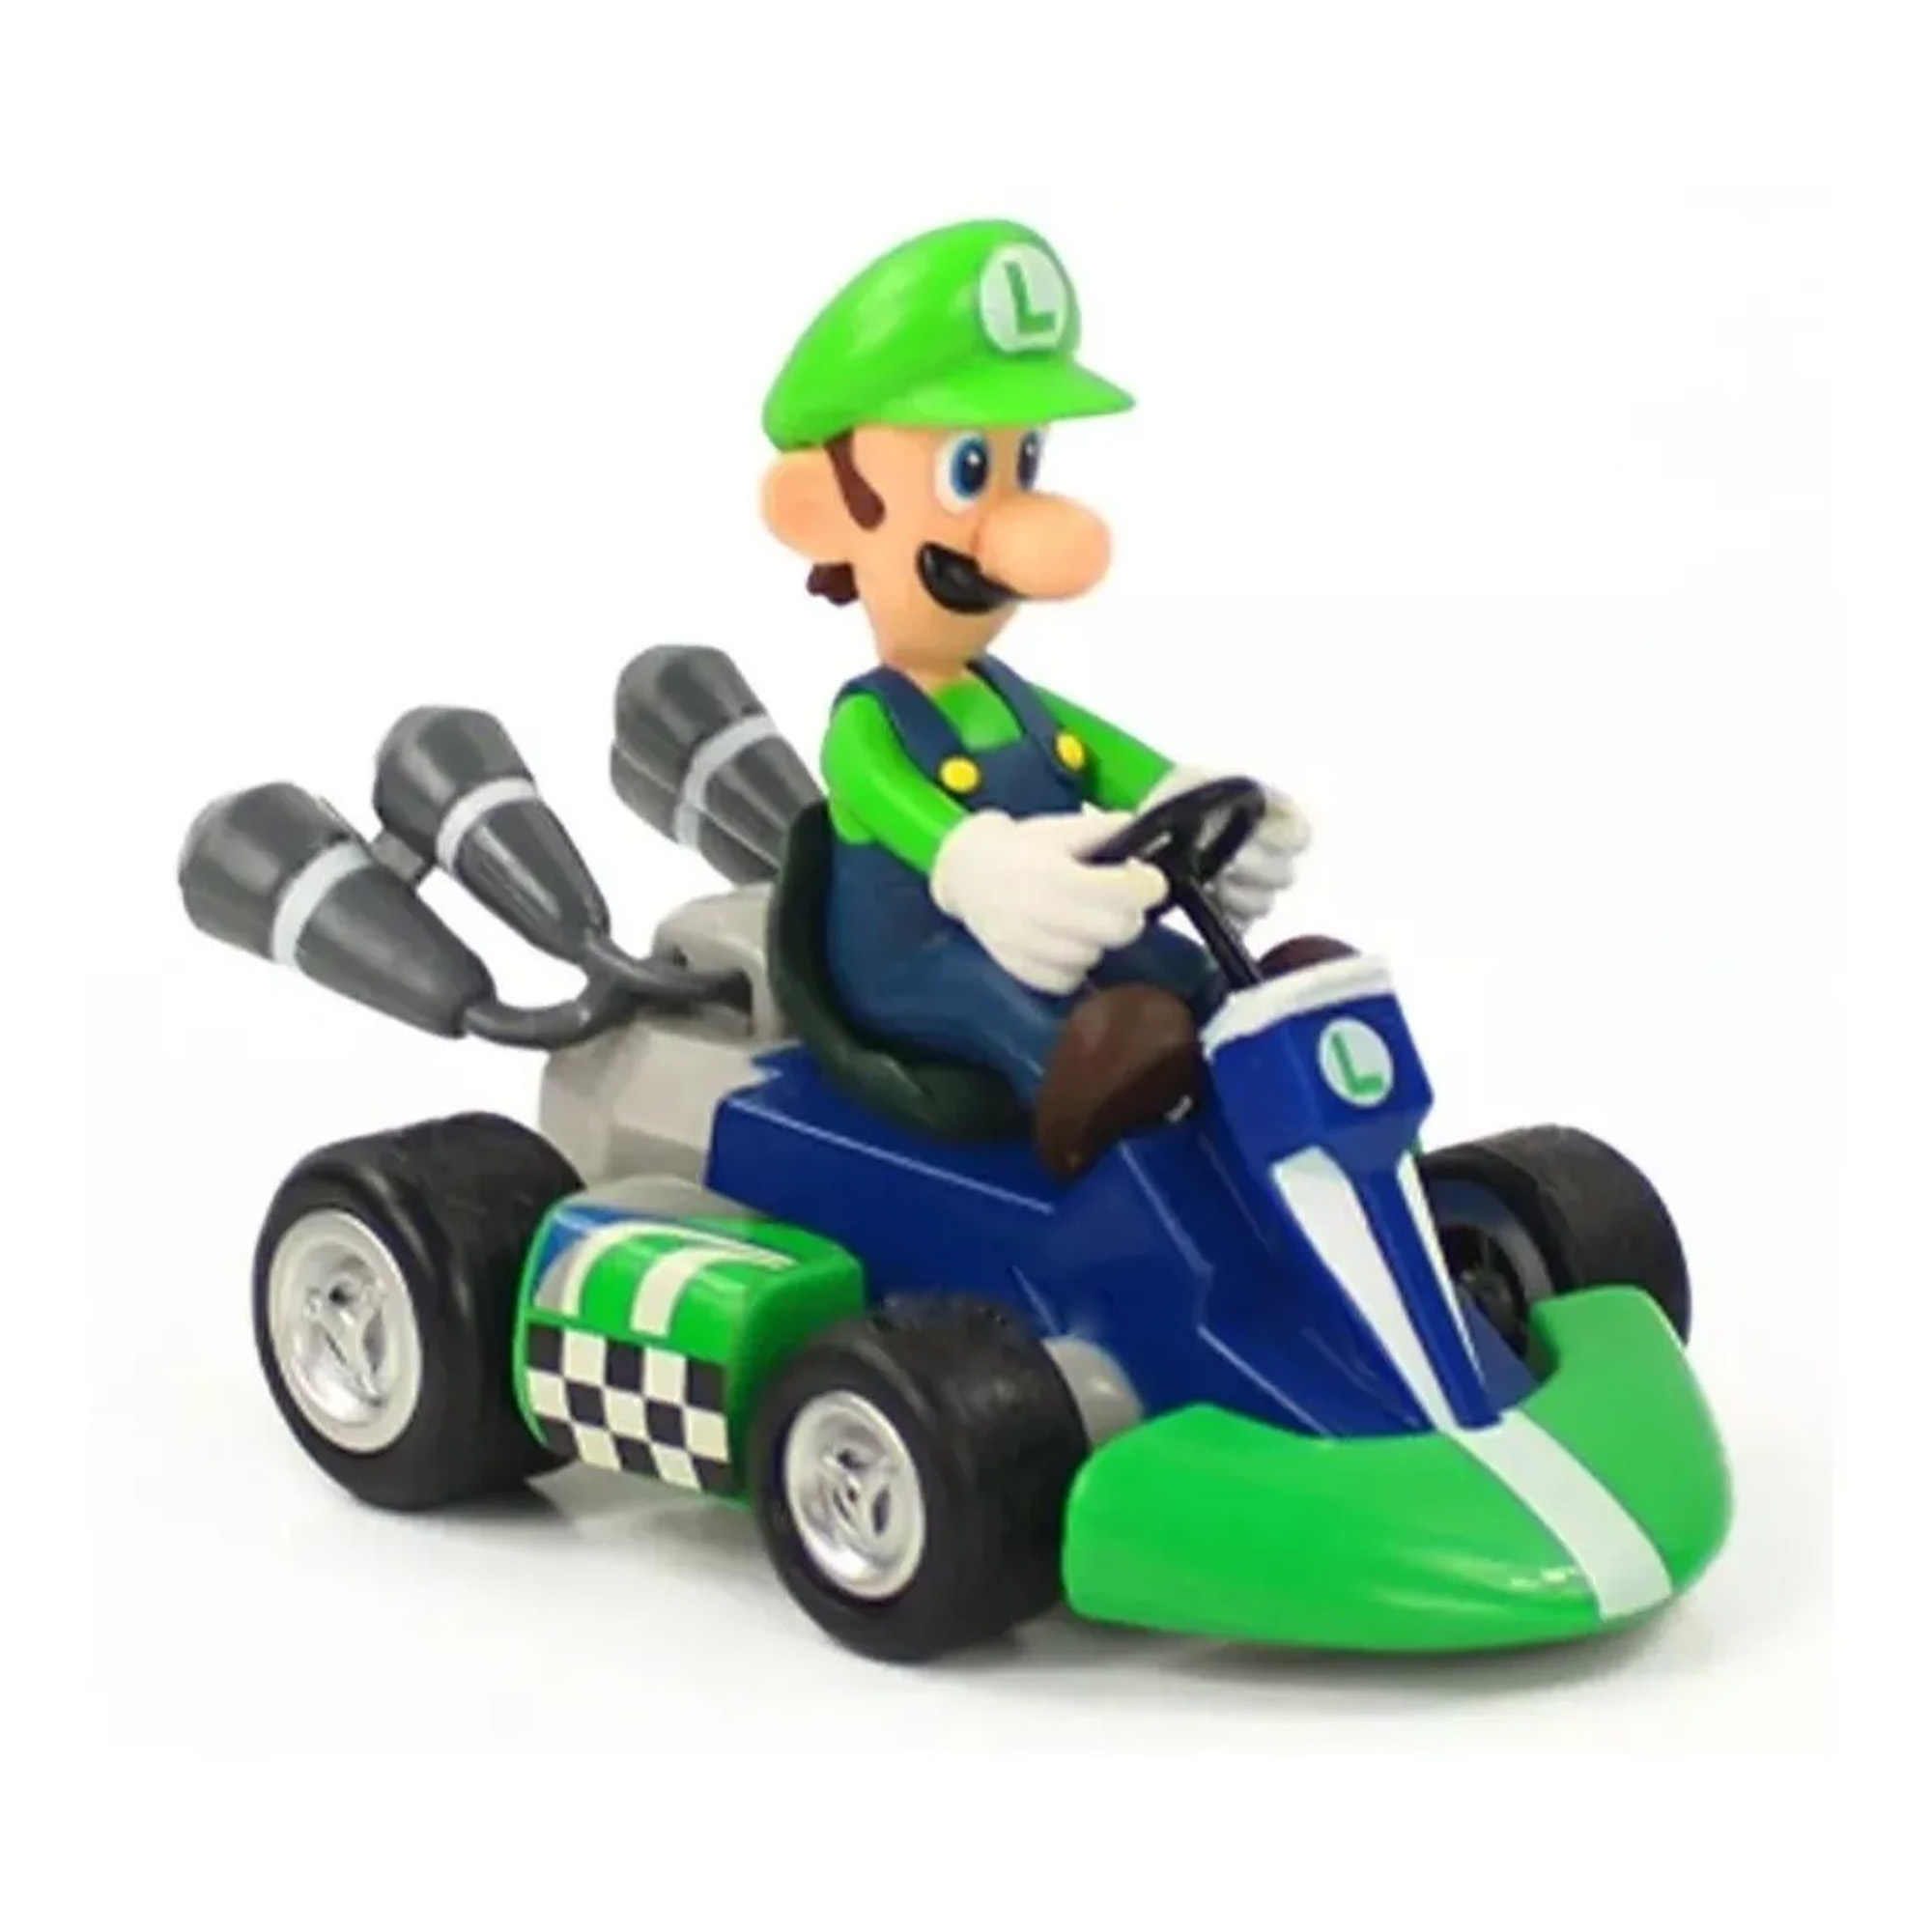 Boneco Carrinho Miniatura com Fricção Super Mario Kart - LUIGI